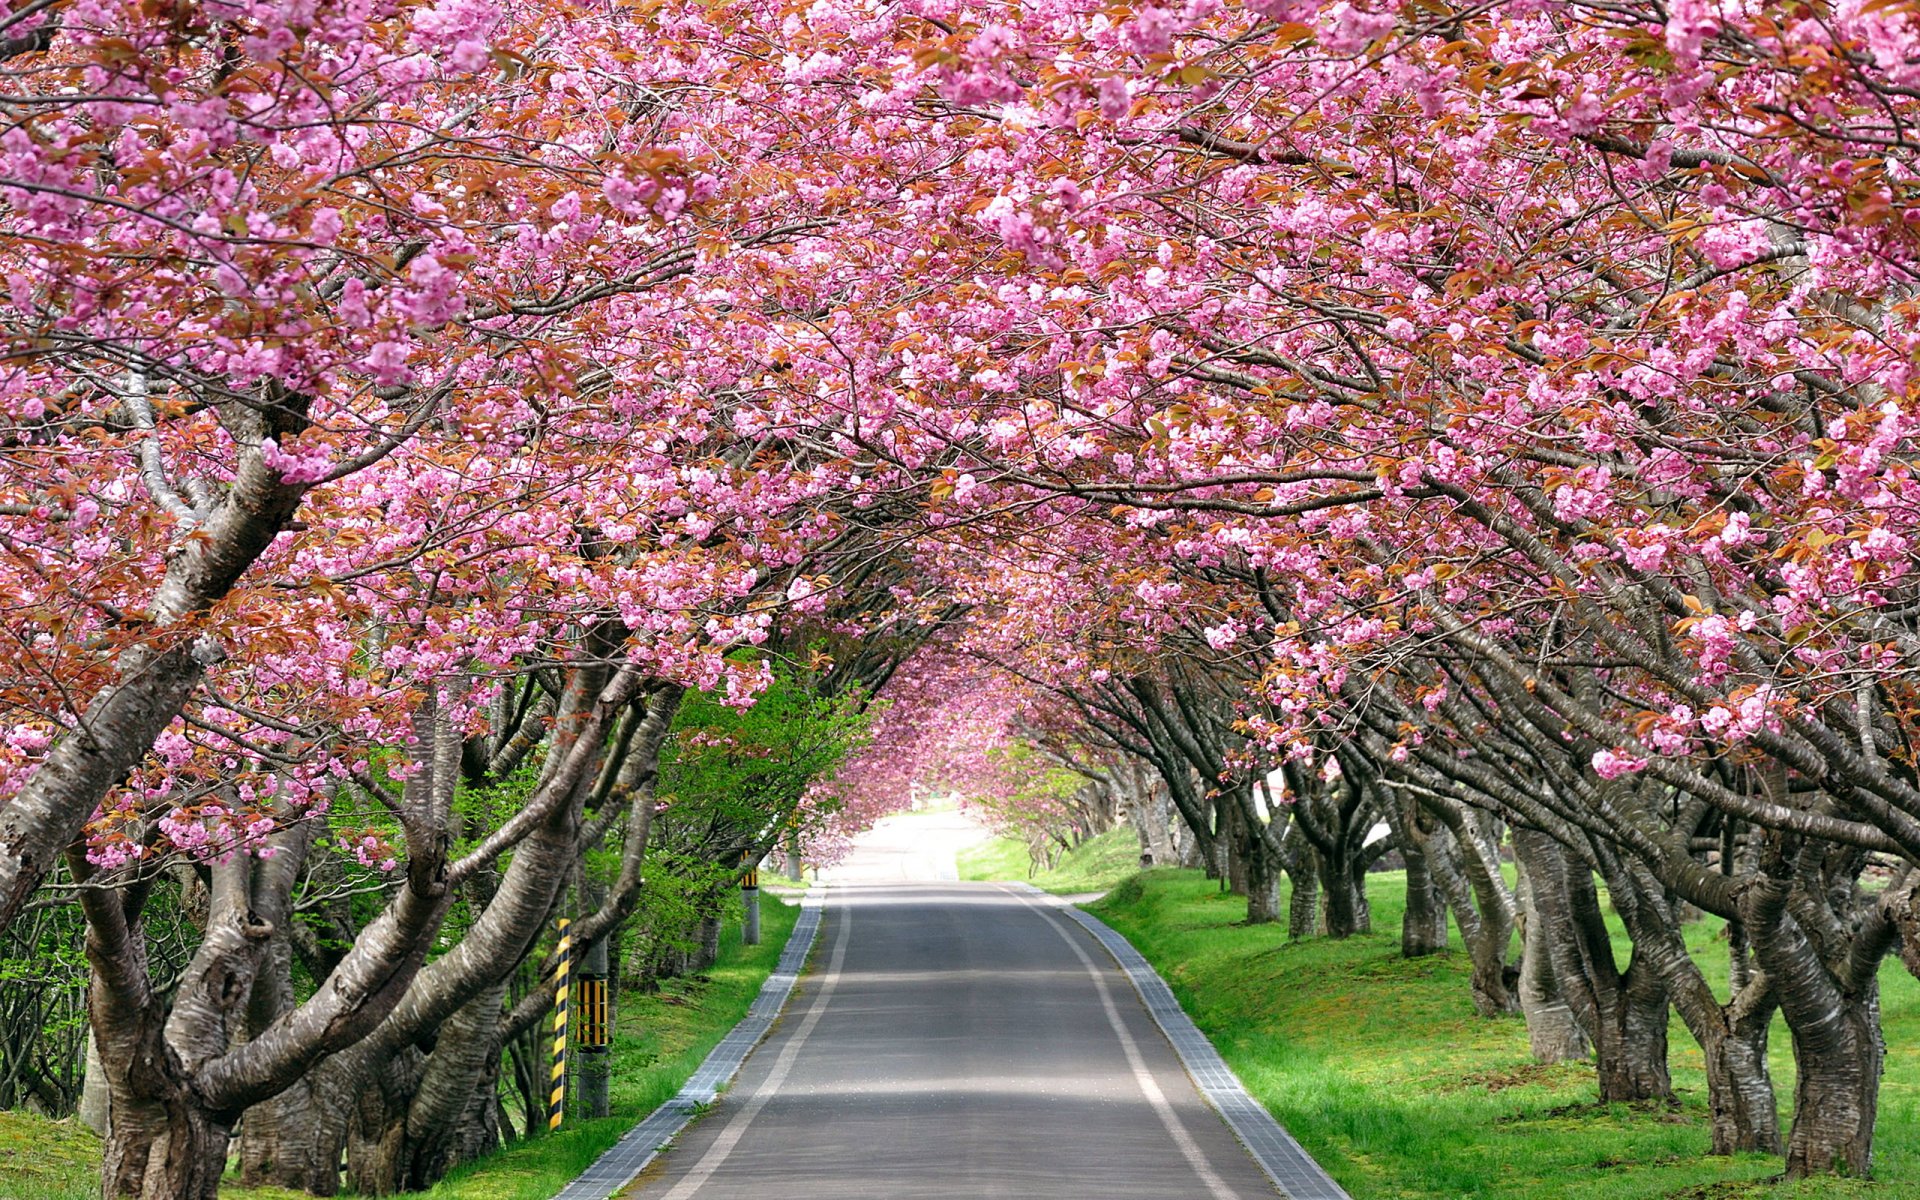 Cherry blossom - обои в разделе Пейзажи.